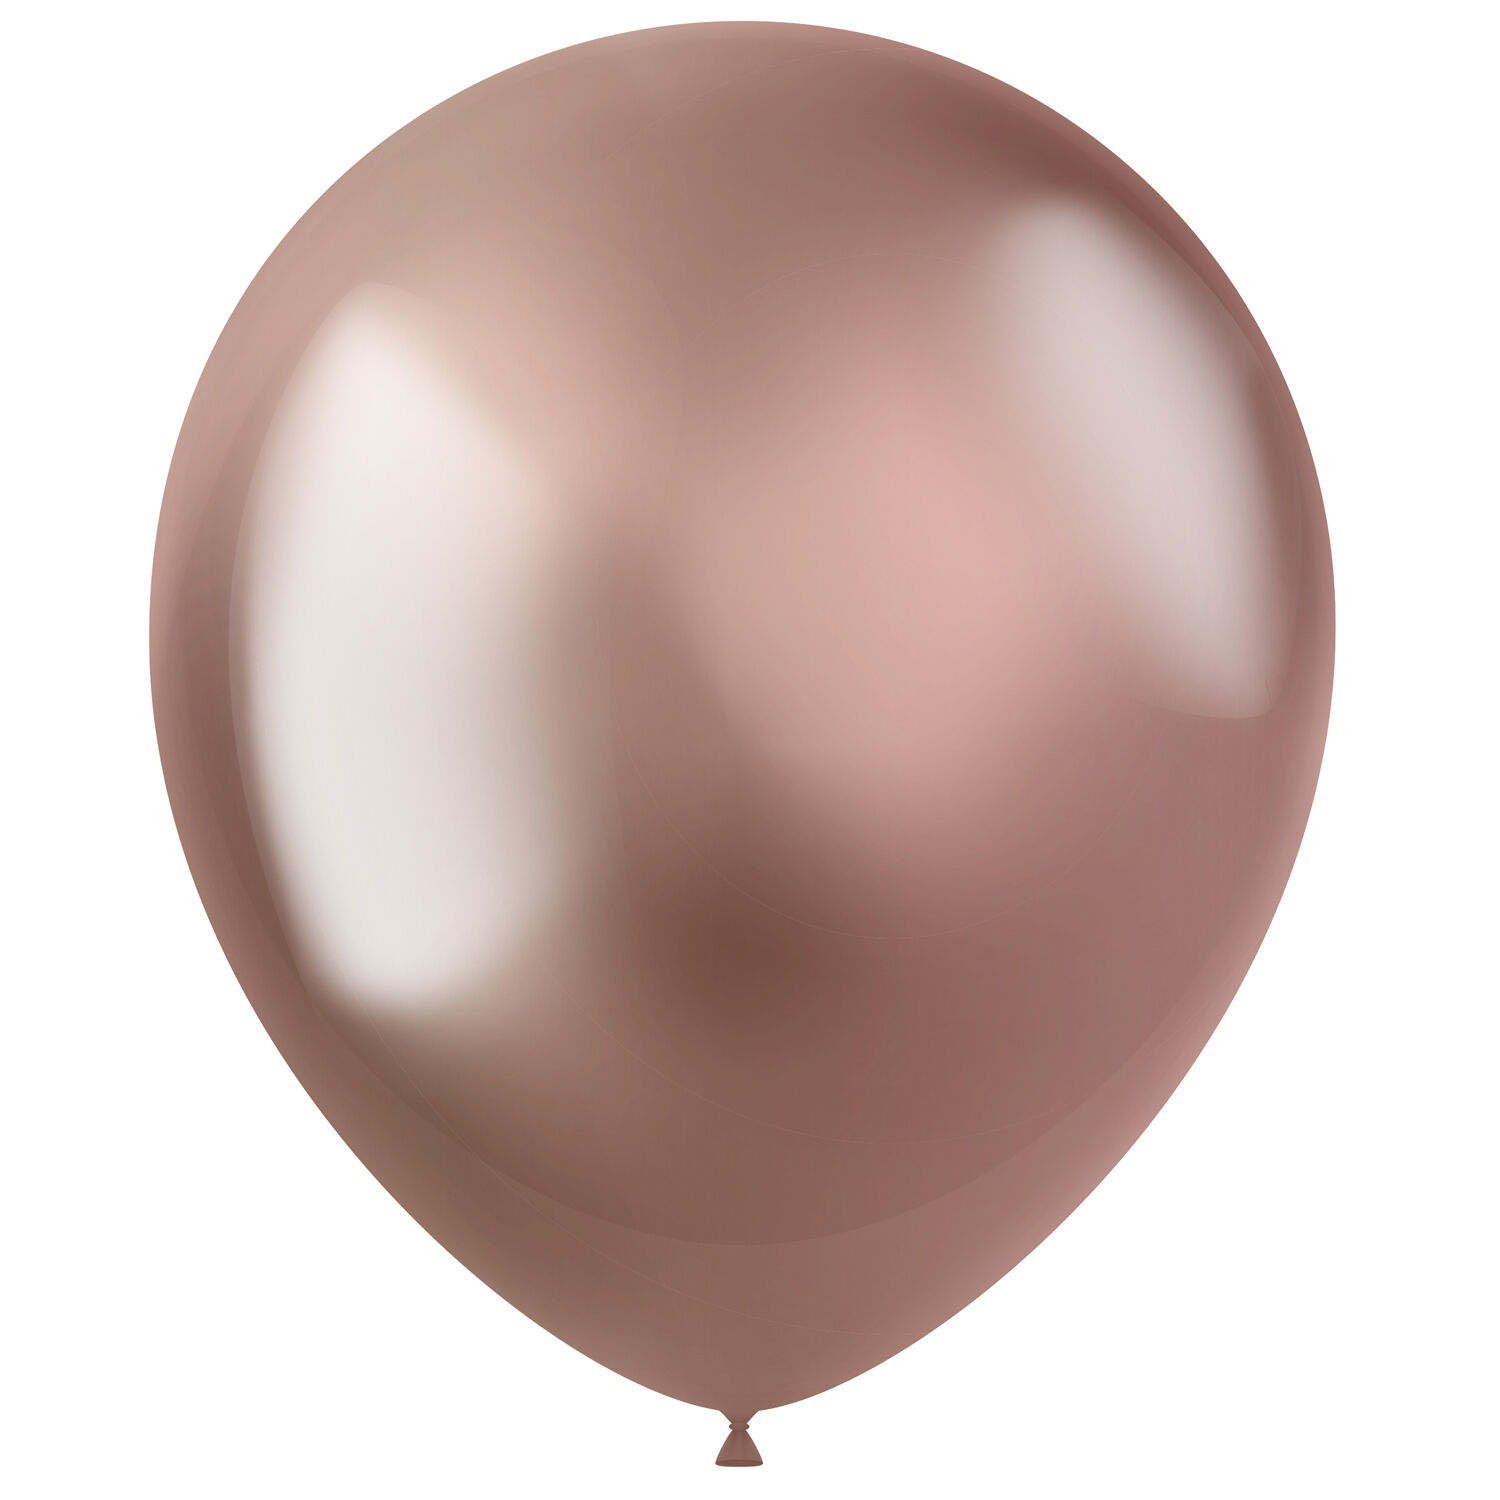 NEU Latex-Luftballons Ultra-Metallic, 33cm, rose-gold, 50 Stück